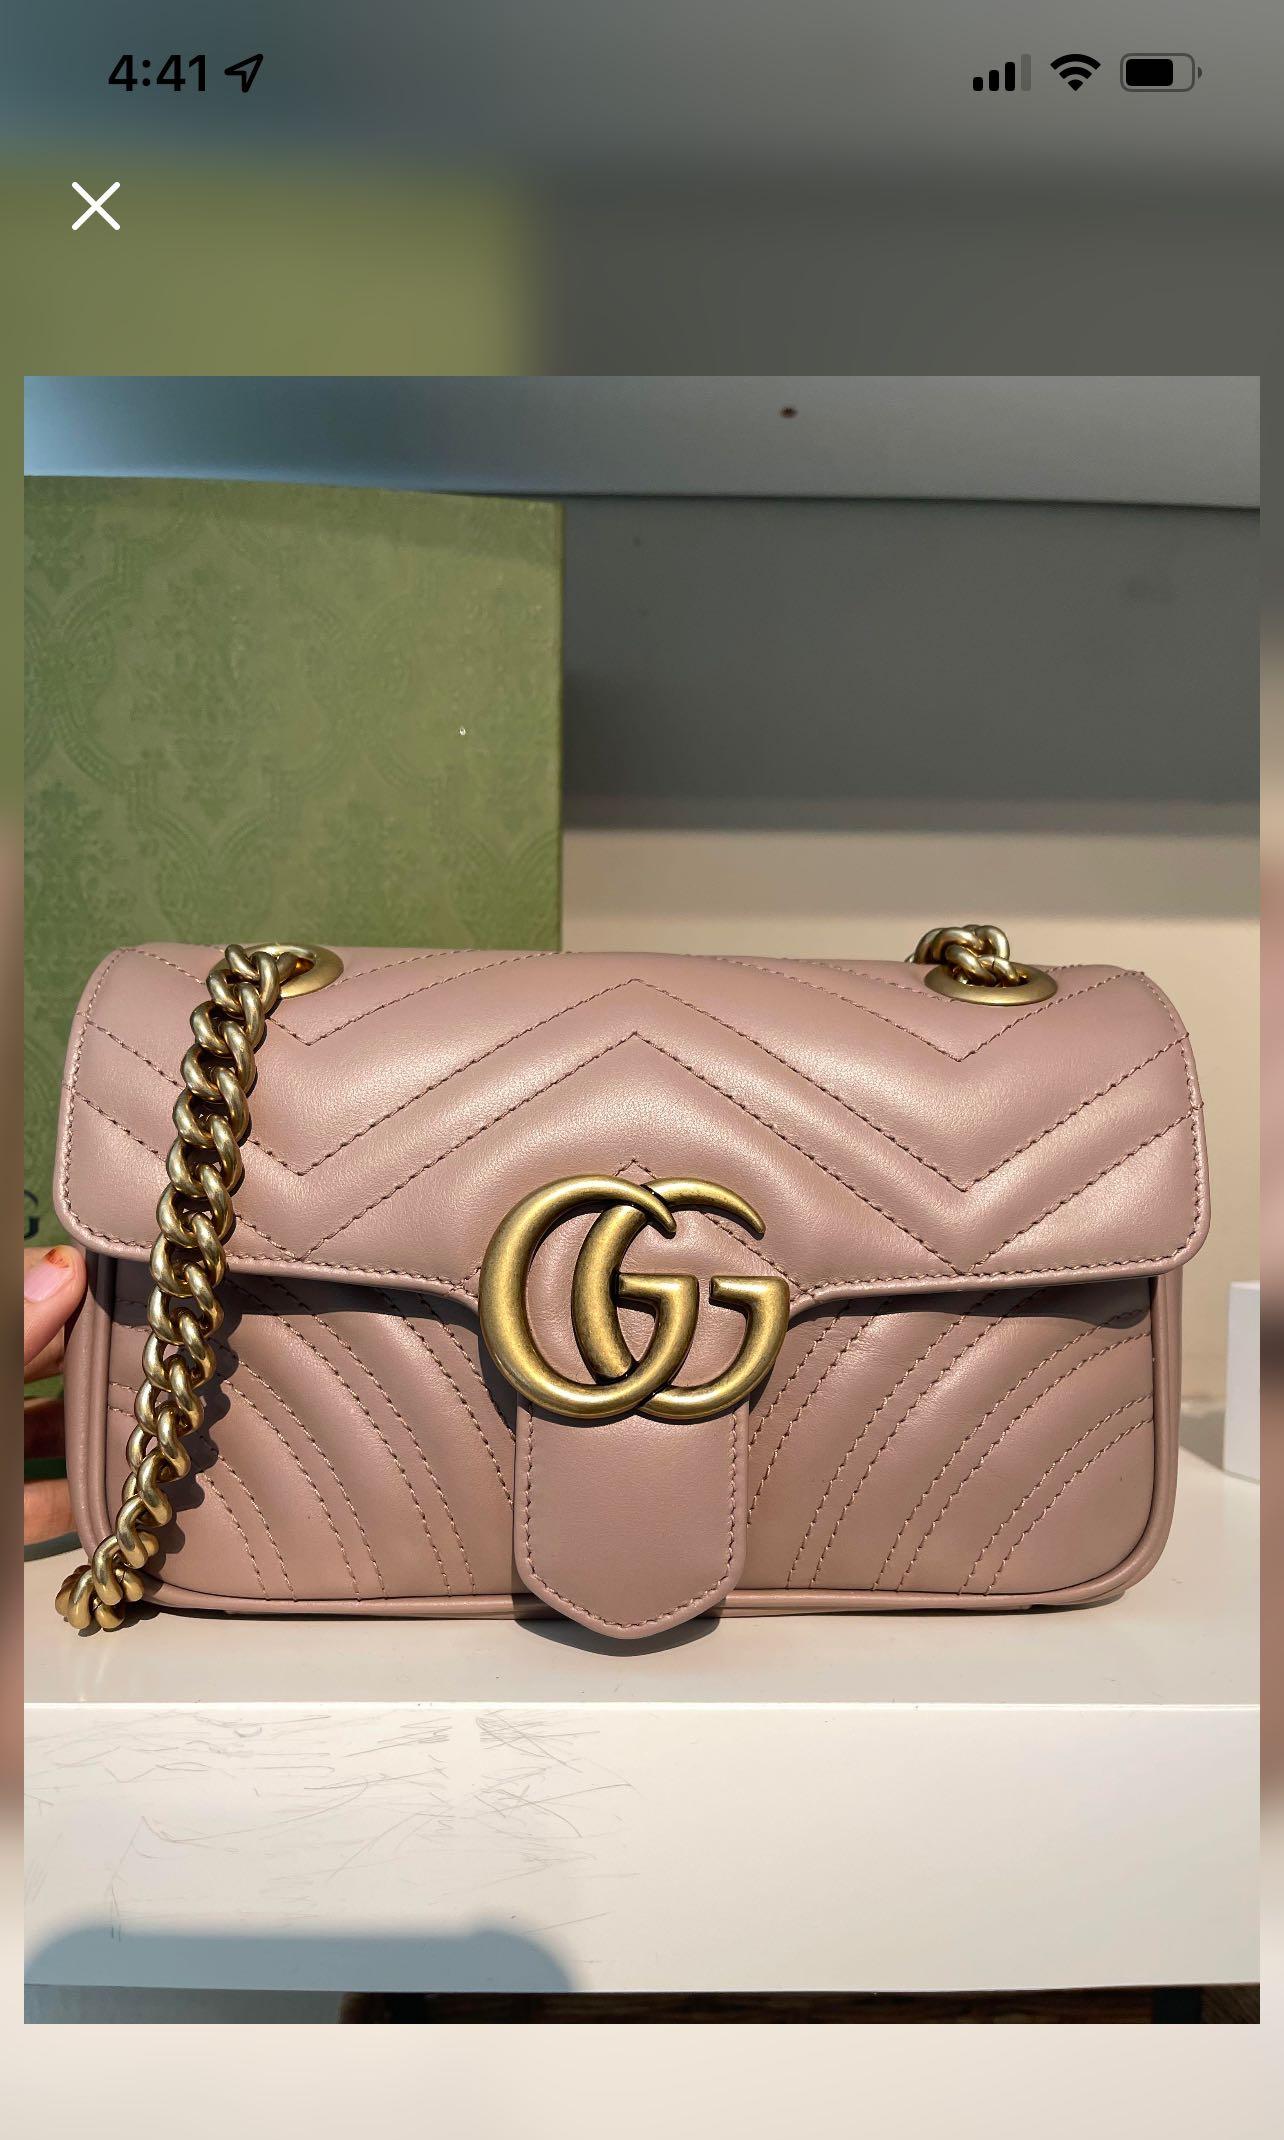 Authentic) Gucci GG Marmont small matelassé-leather shoulder bag